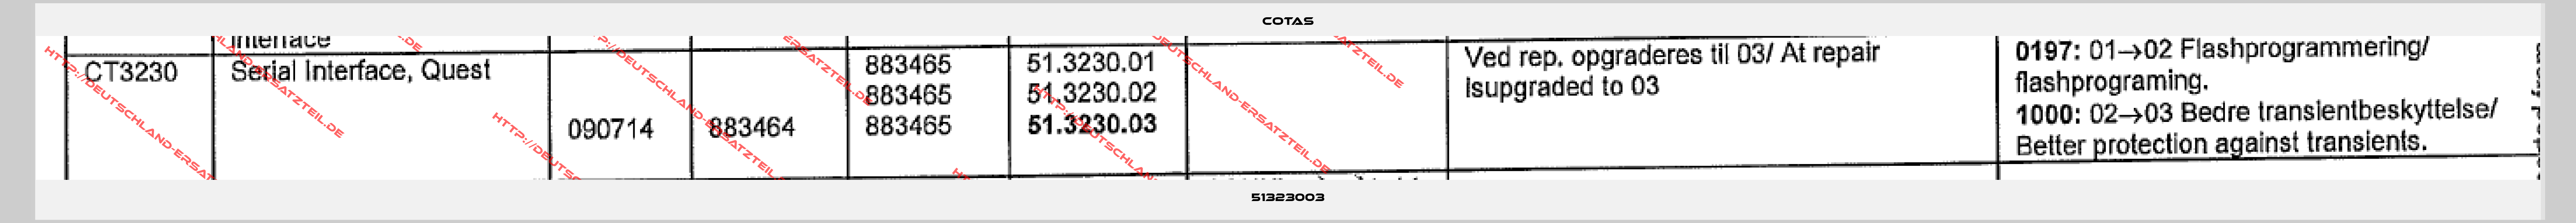 COTAS-51323003